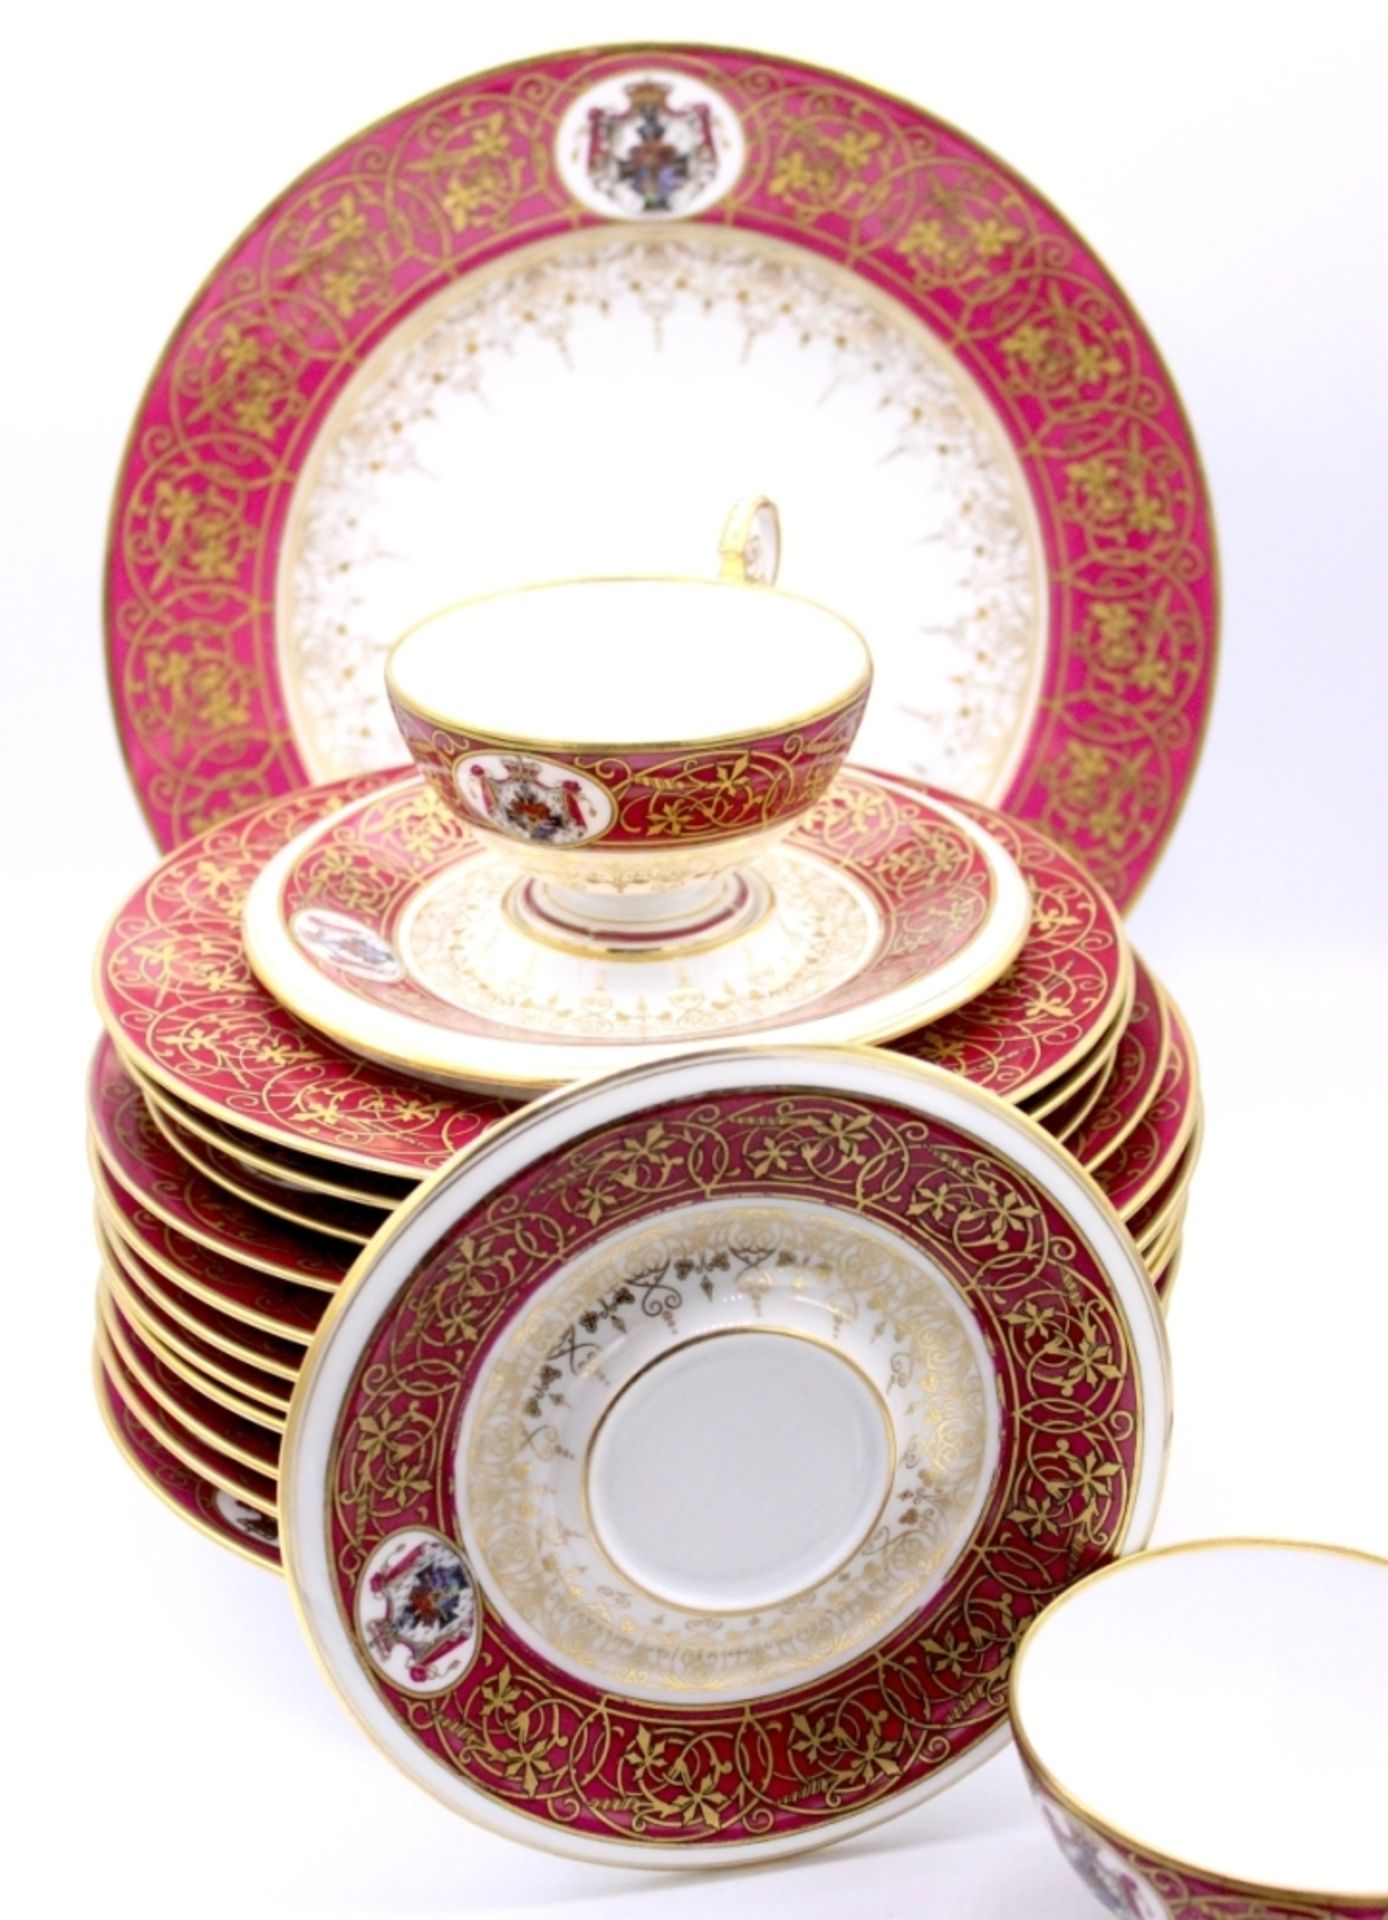 Lot Porzellan - wohl Schlackenwerth (Ostrov) um 1900 Porzellan mit reicher Goldstaffage,